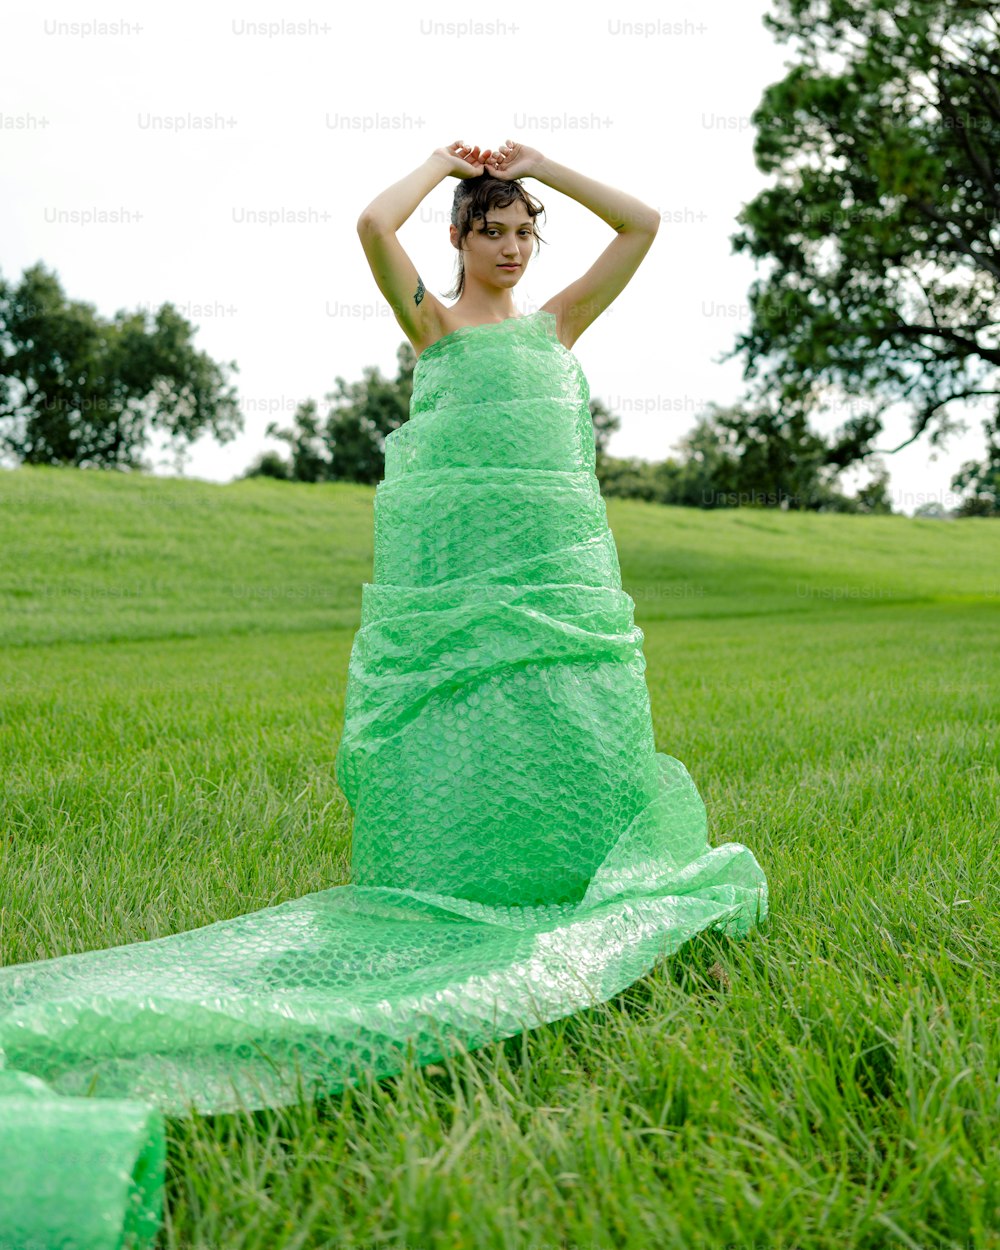 草むらに座る緑のドレスを着た女性